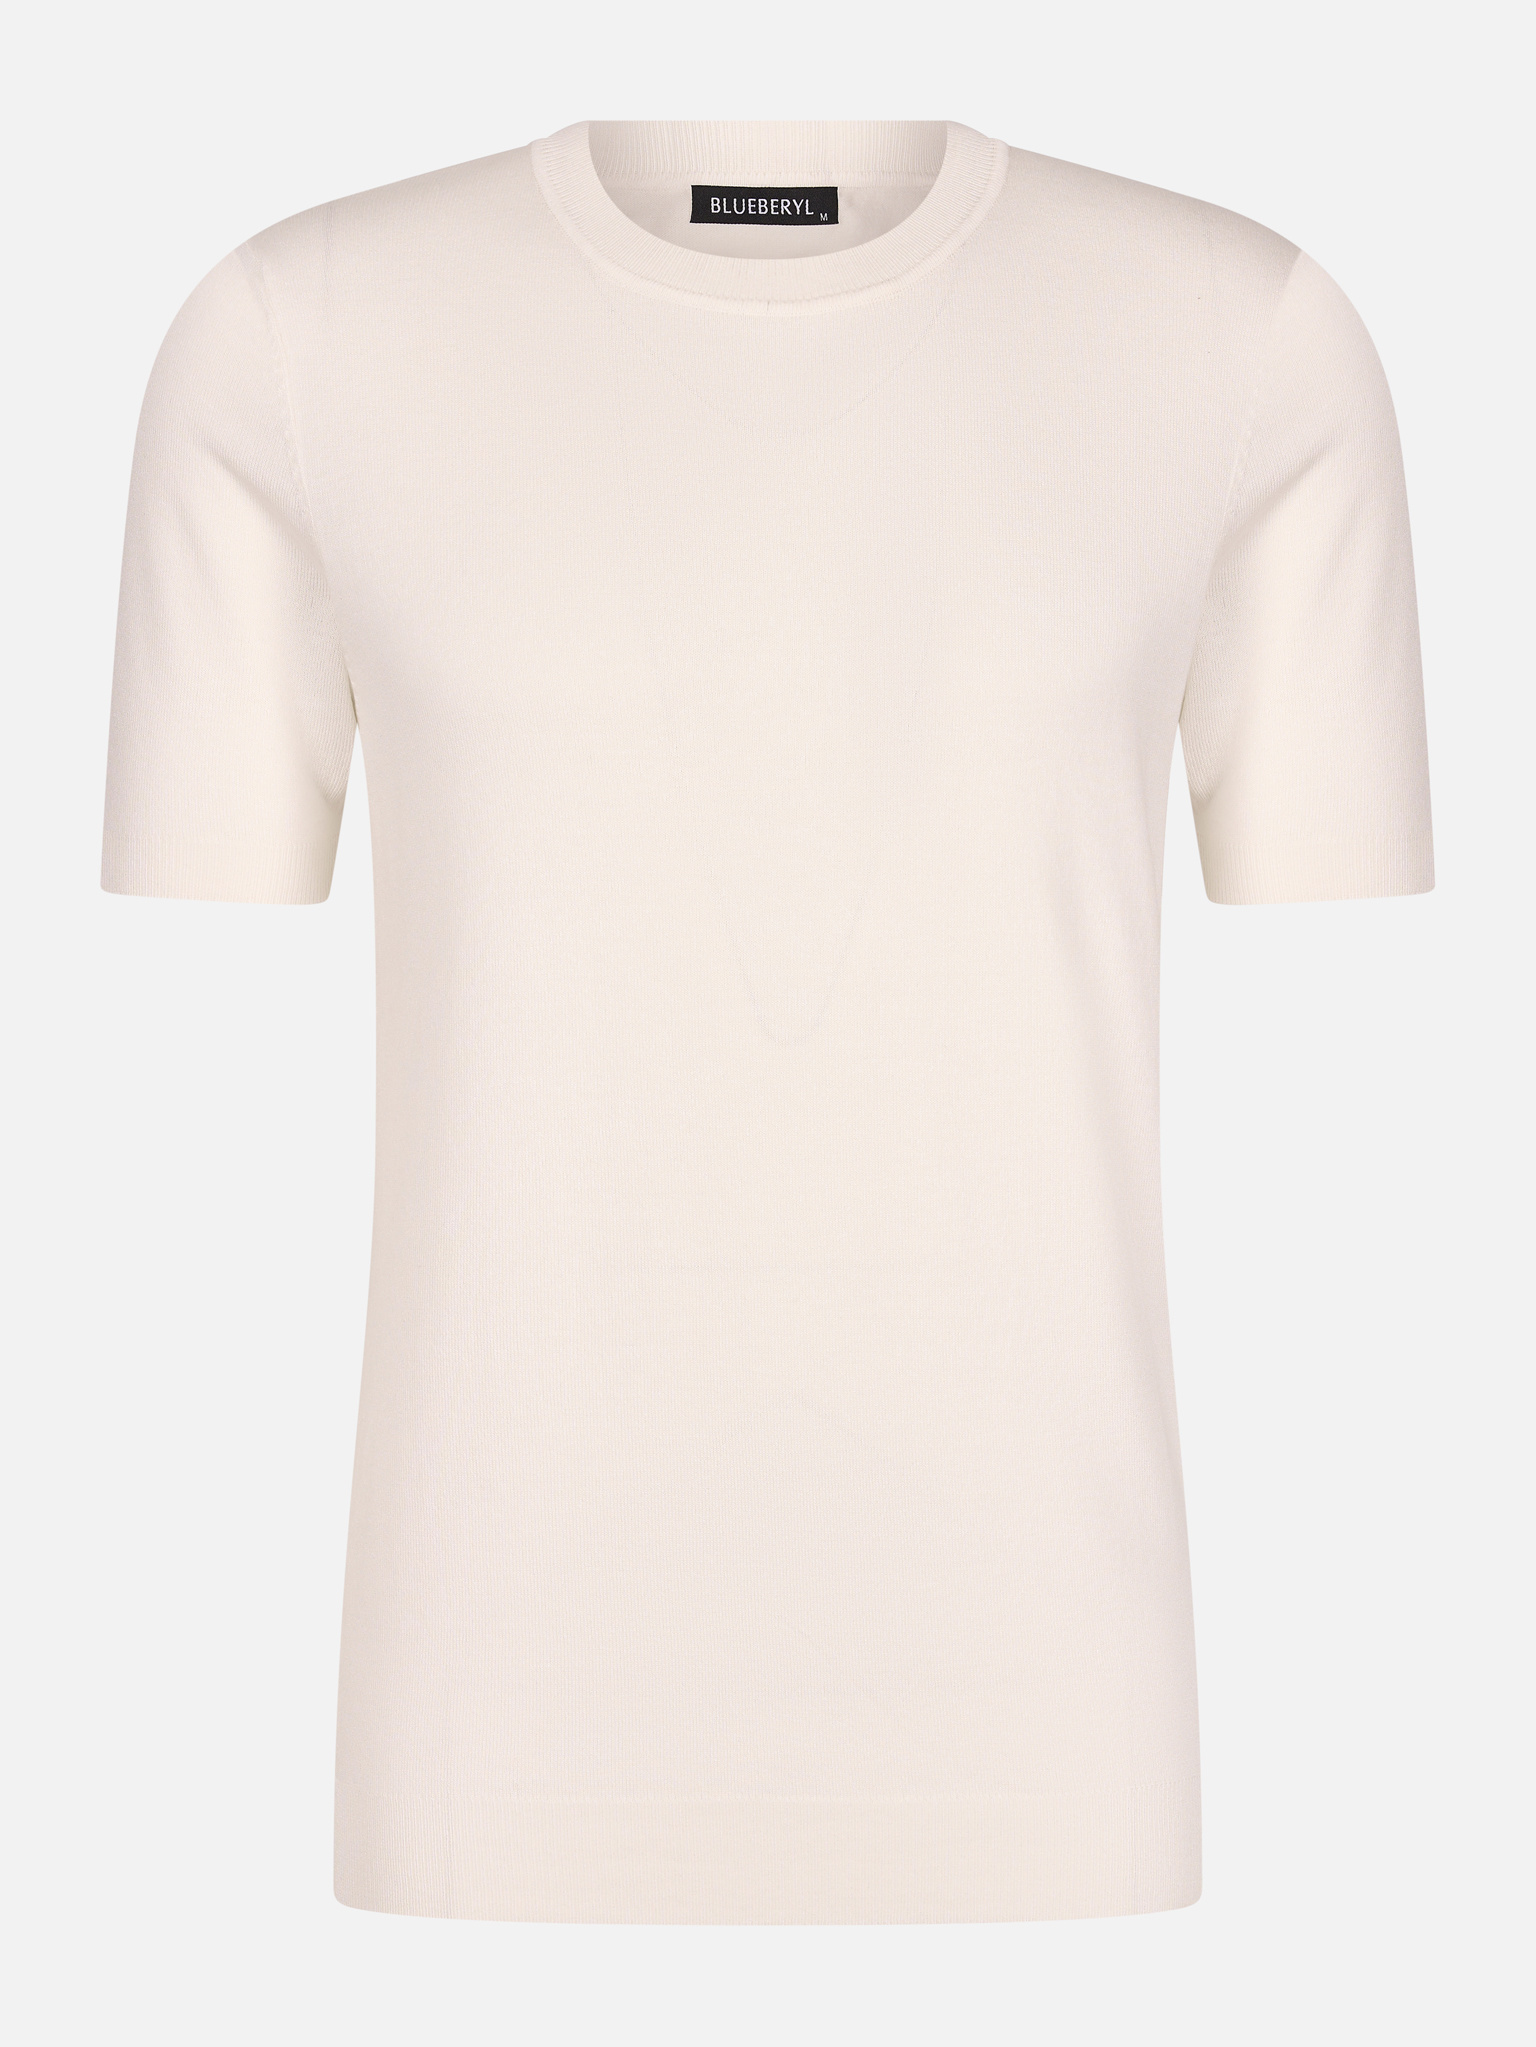 browser Nationale volkstelling stimuleren Wit T-shirt heren kopen voor €29,95 | Valenci - VALENCI